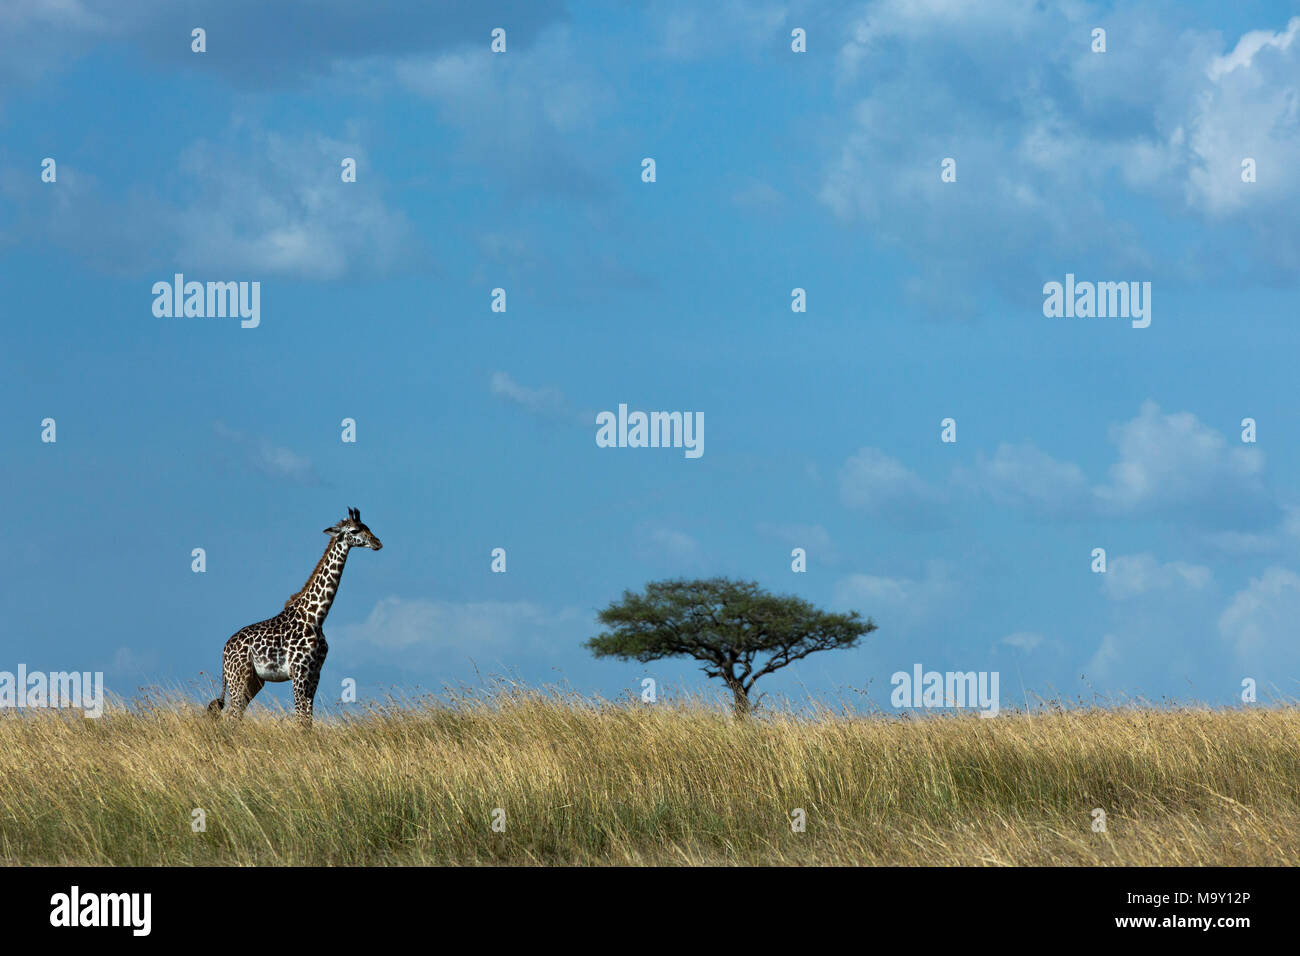 Giraffe on African Savannah Stock Photo